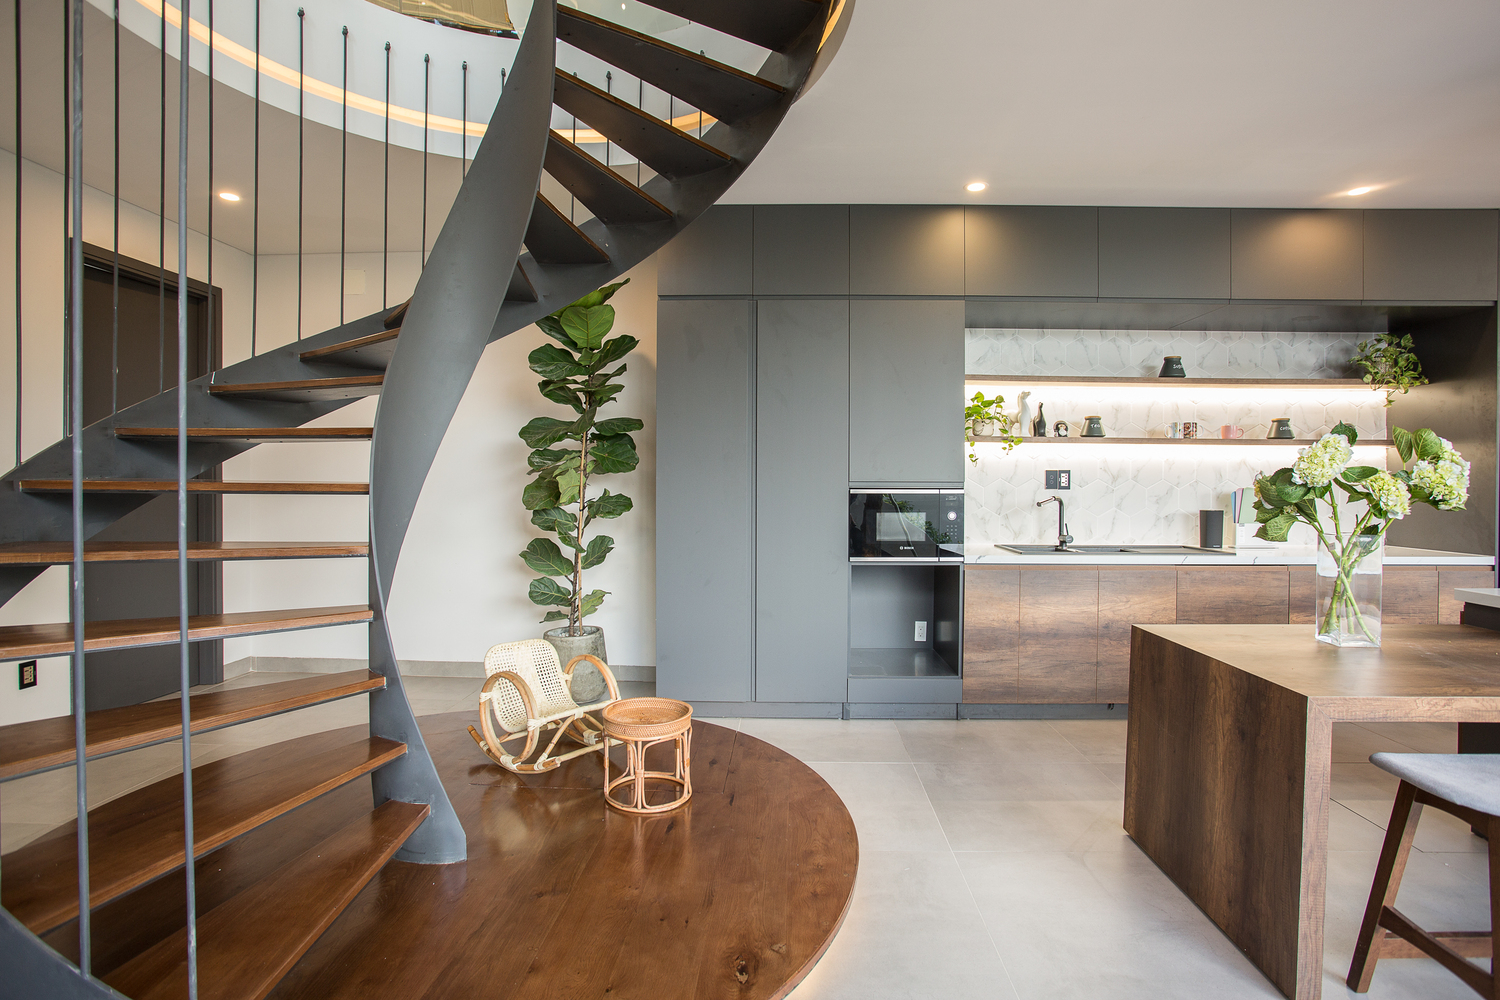 Cầu thang bậc gỗ dạng hở cho phép ánh sáng và không khí lưu thông khắp ngôi nhà.